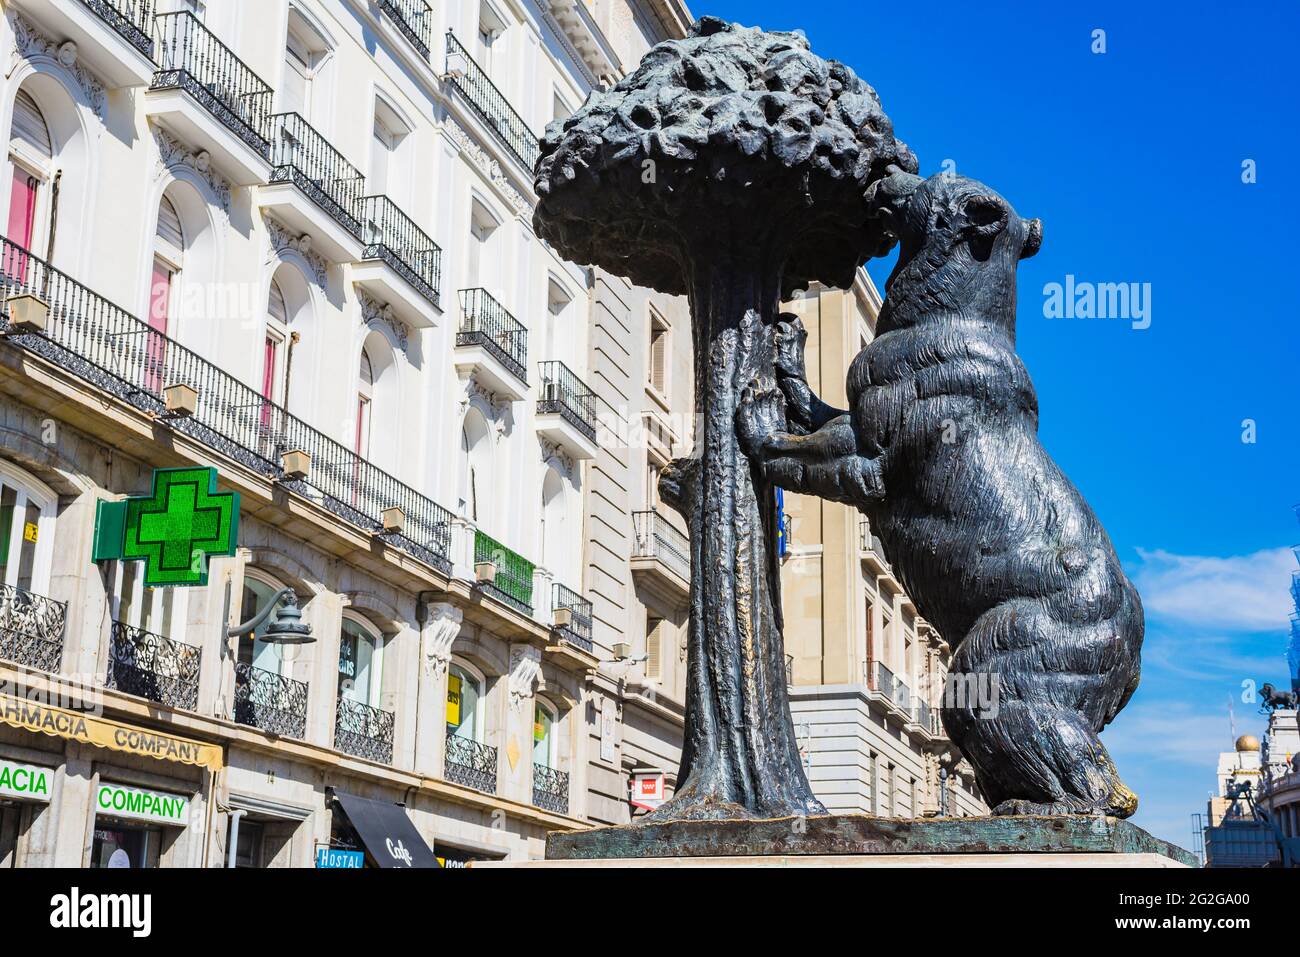 Bronzestatue des Bären und des Madroño-Baumes, Erdbeerbaum, Wappensymbol von Madrid. Die Puerta del Sol, das Tor der Sonne, ist ein öffentlicher Platz in Mad Stockfoto